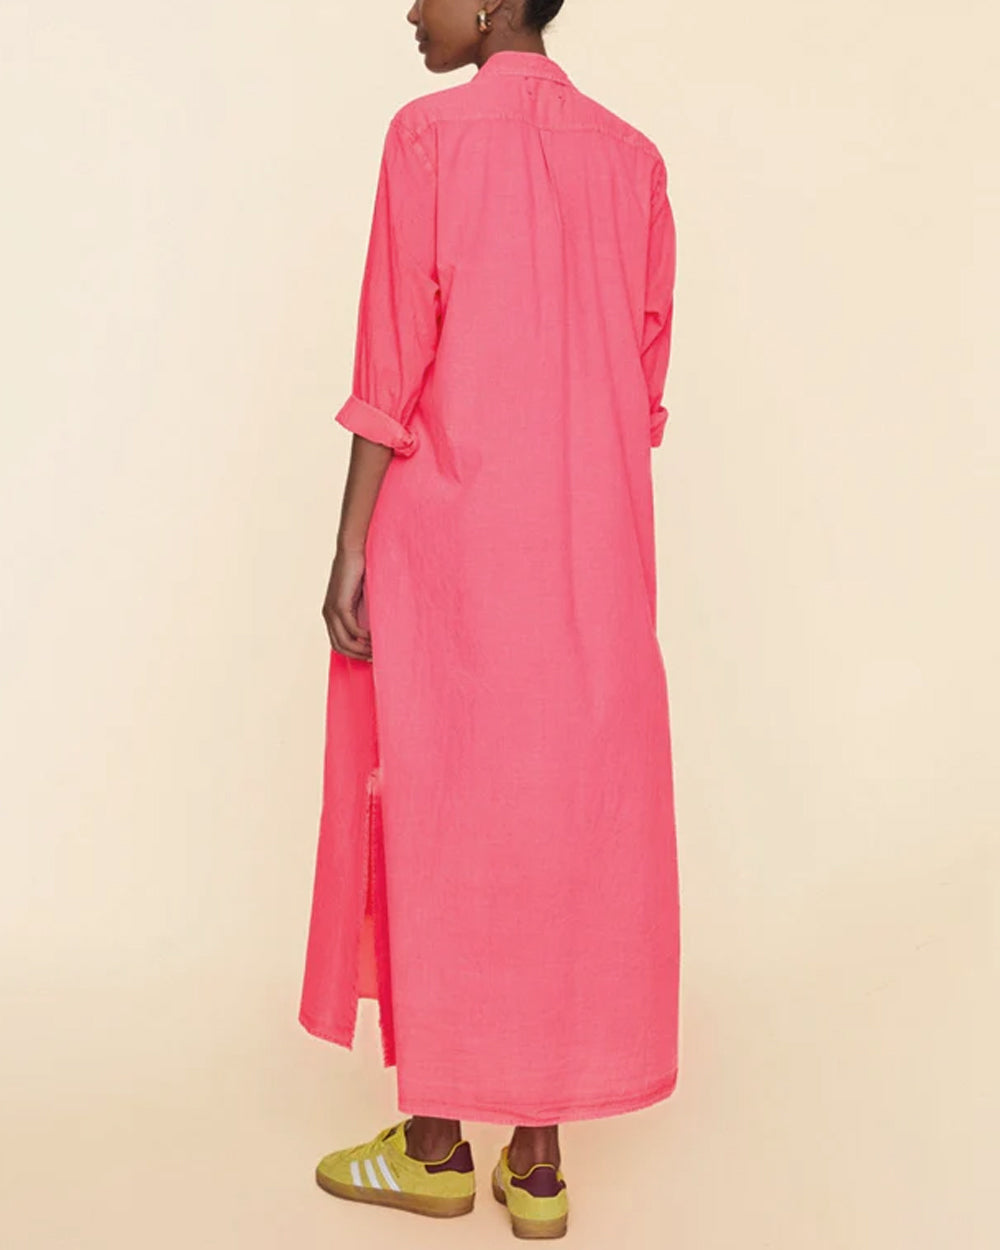 Neon Pink Boden Dress